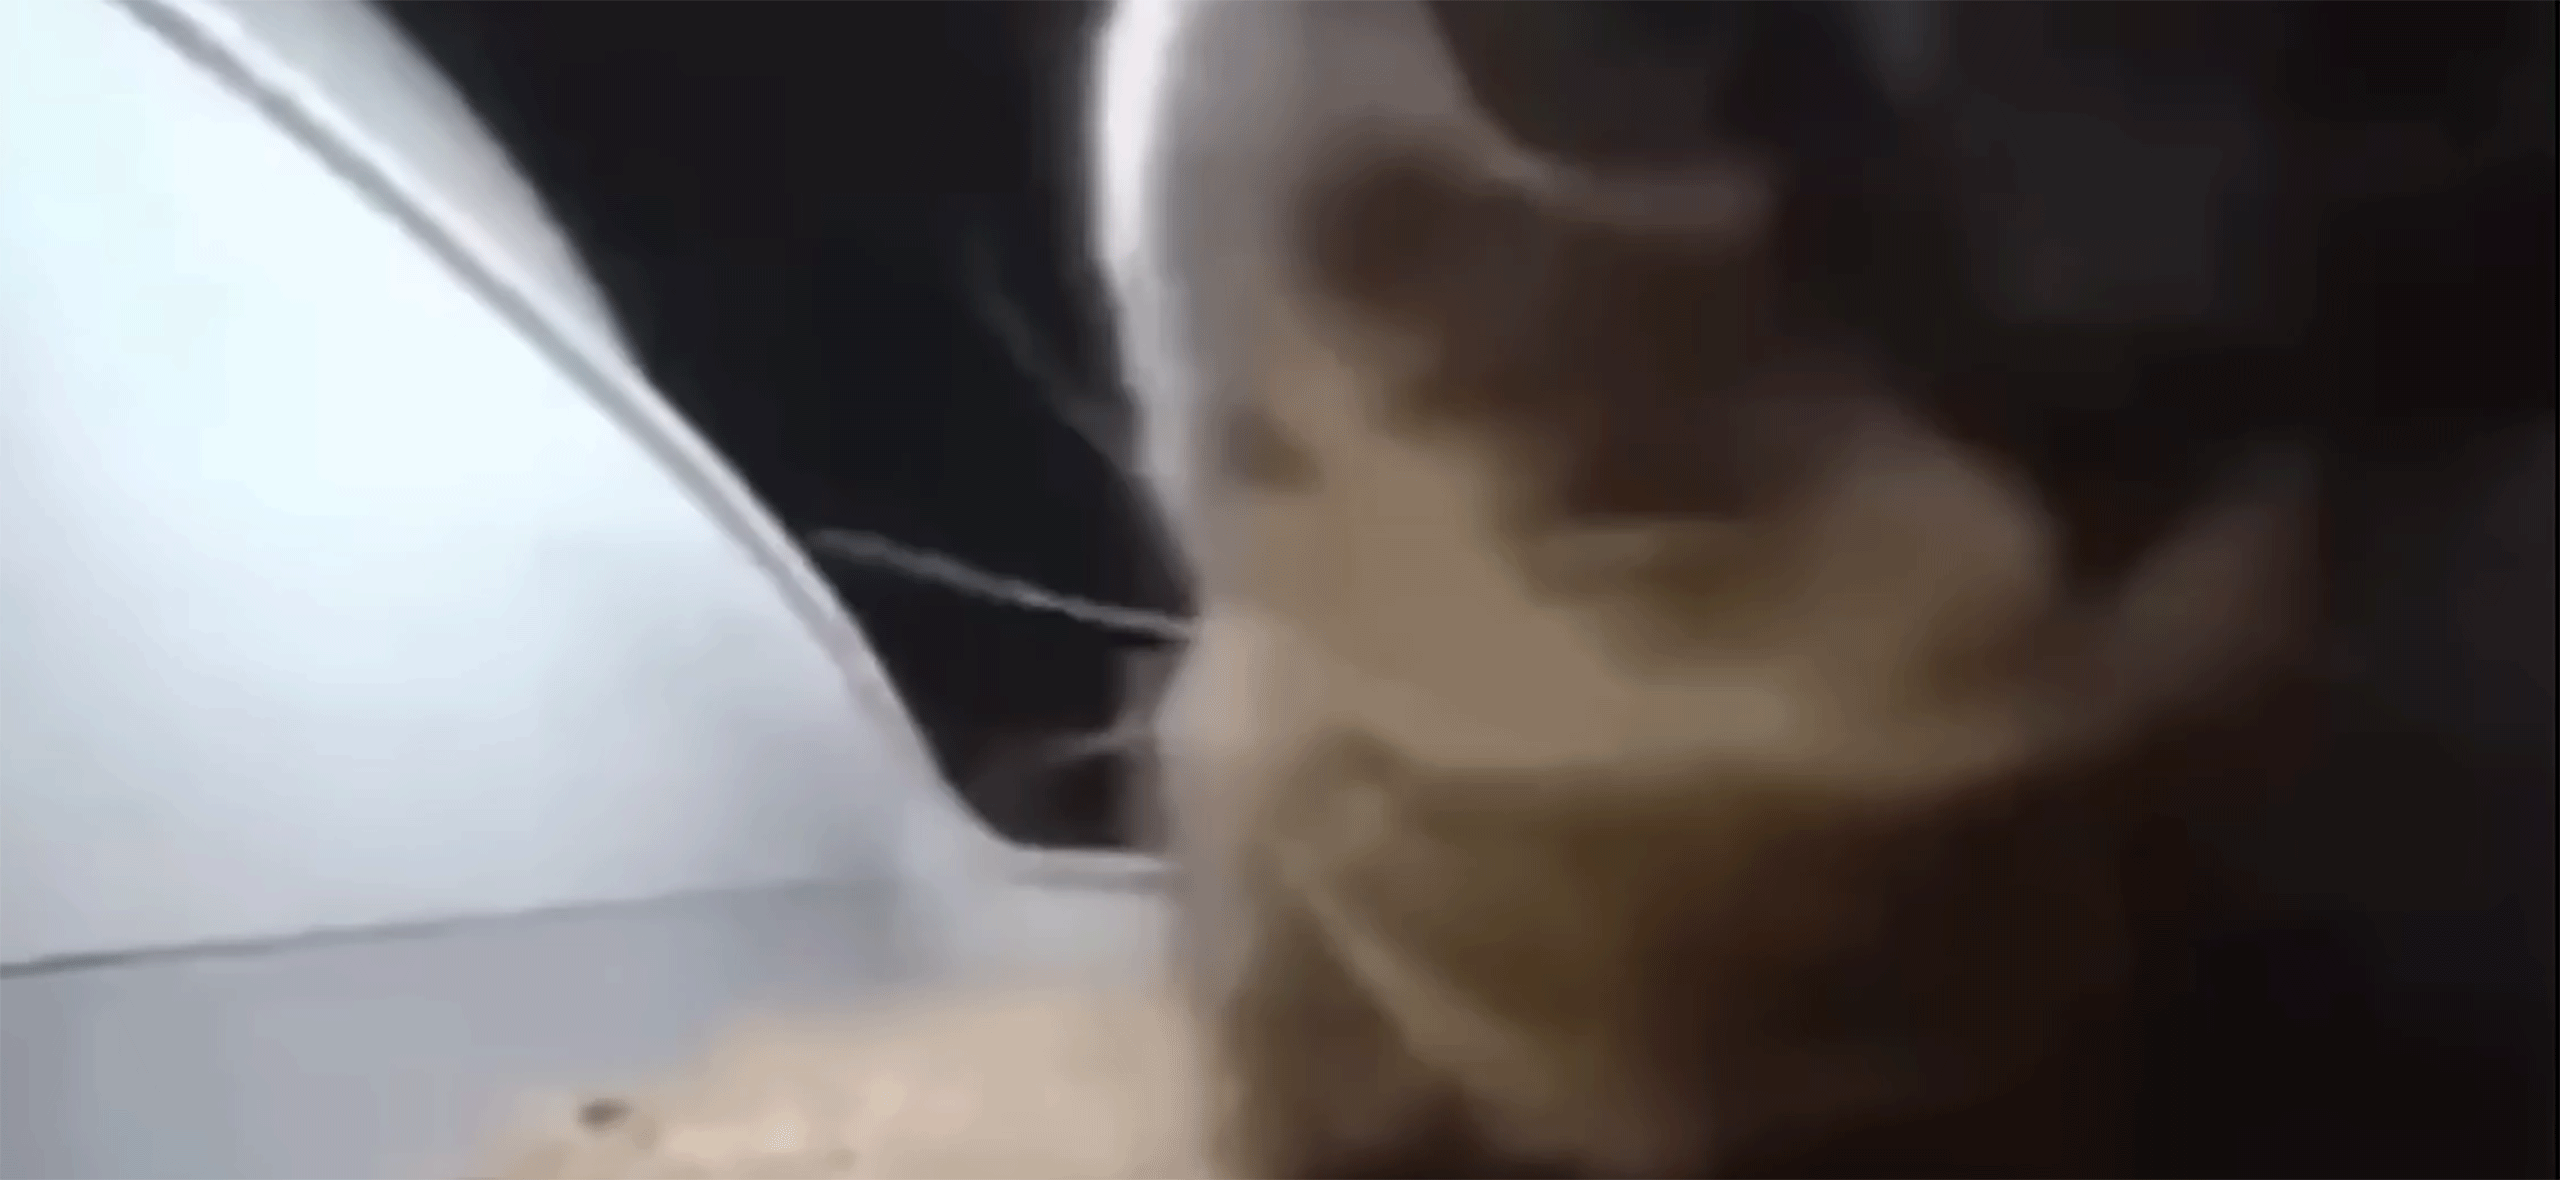 «Чипи-чипи чапа-чапа»: откуда взялся танцующий в лотке кот и как он стал вирусным мемом